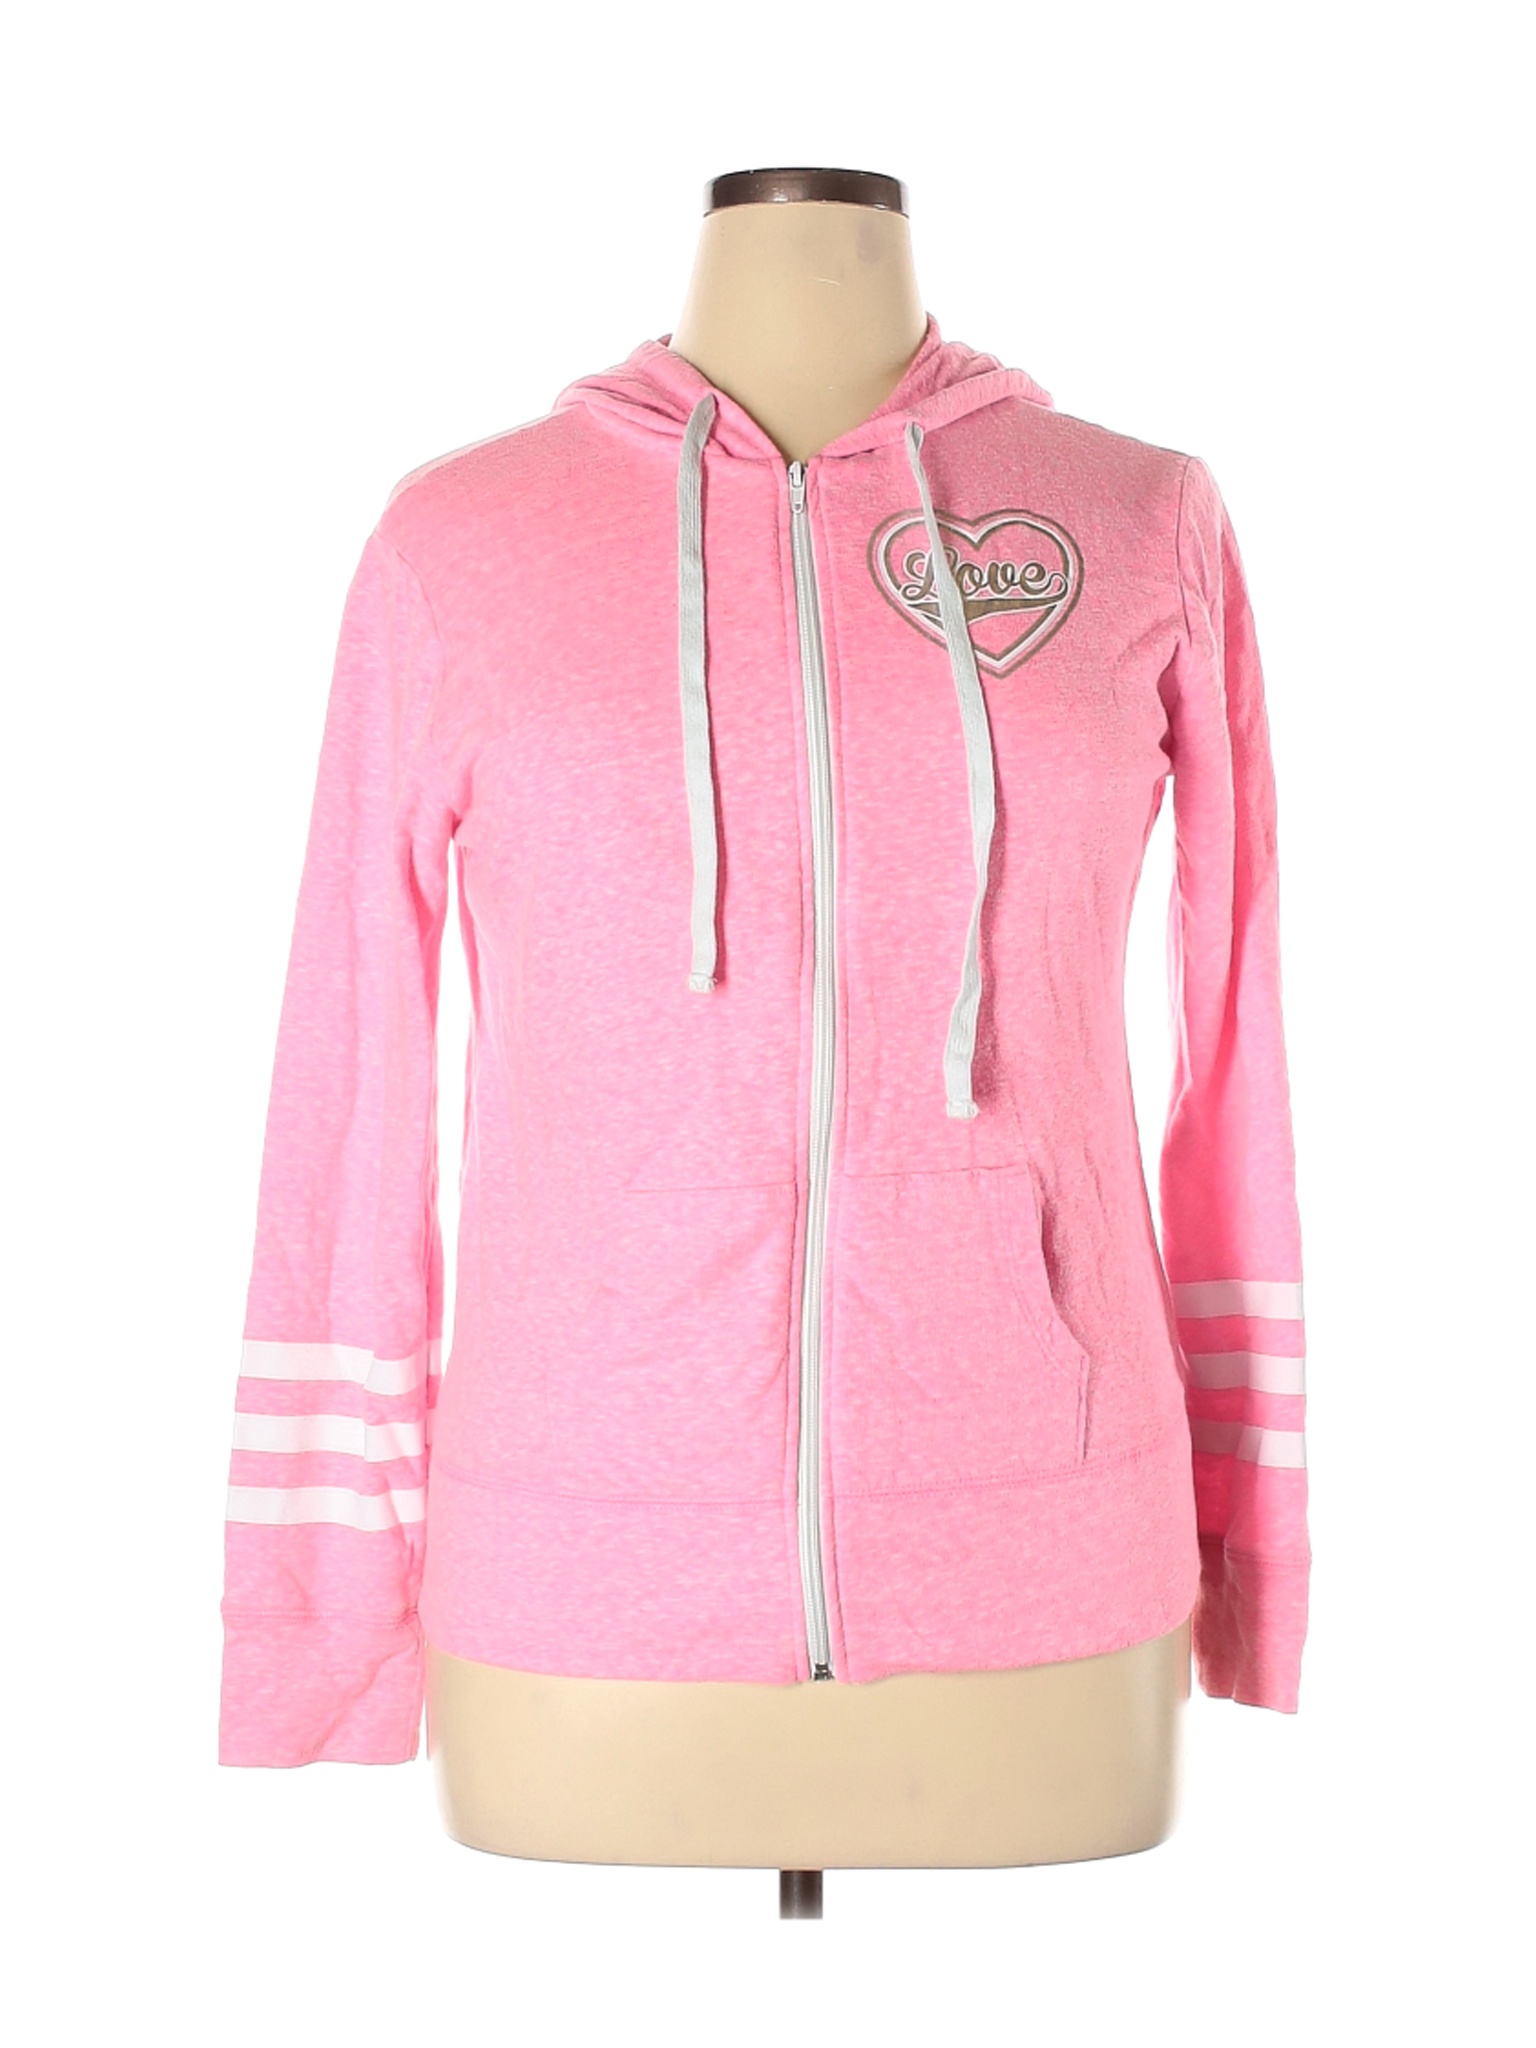 Jerry Leigh Apparel Women Pink Zip Up Hoodie XL | eBay